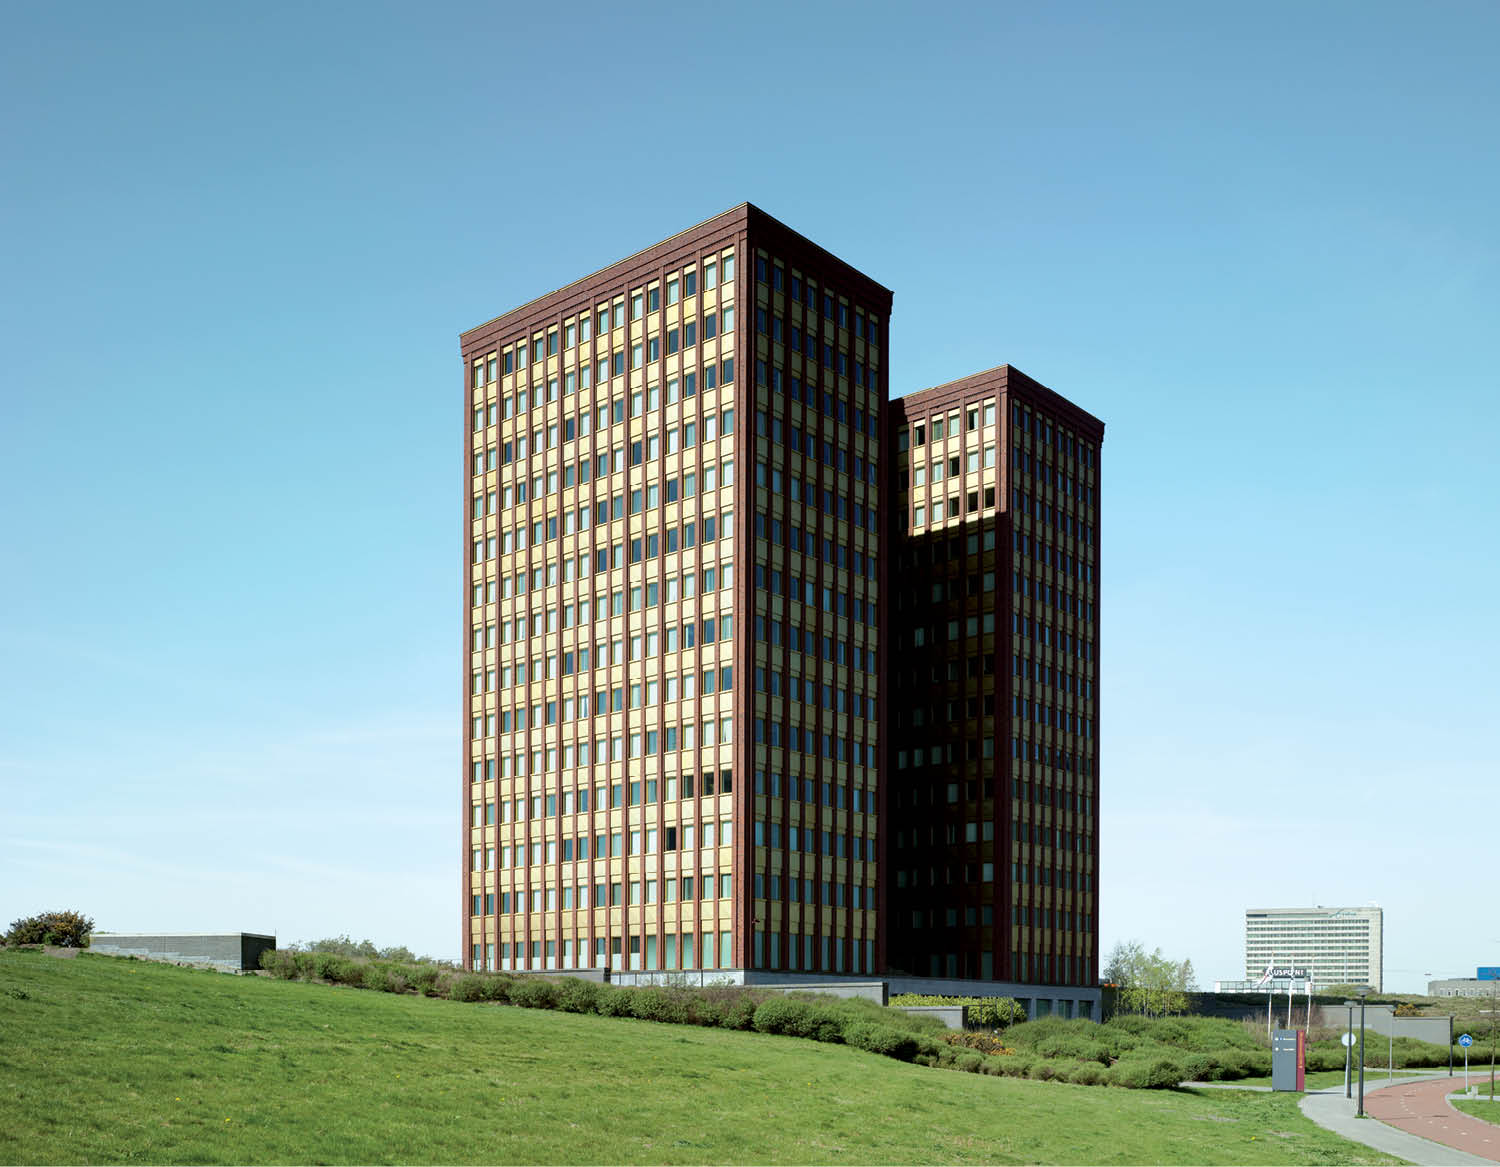 PriceWaterhouseCoopers Brainpark - Rotterdam